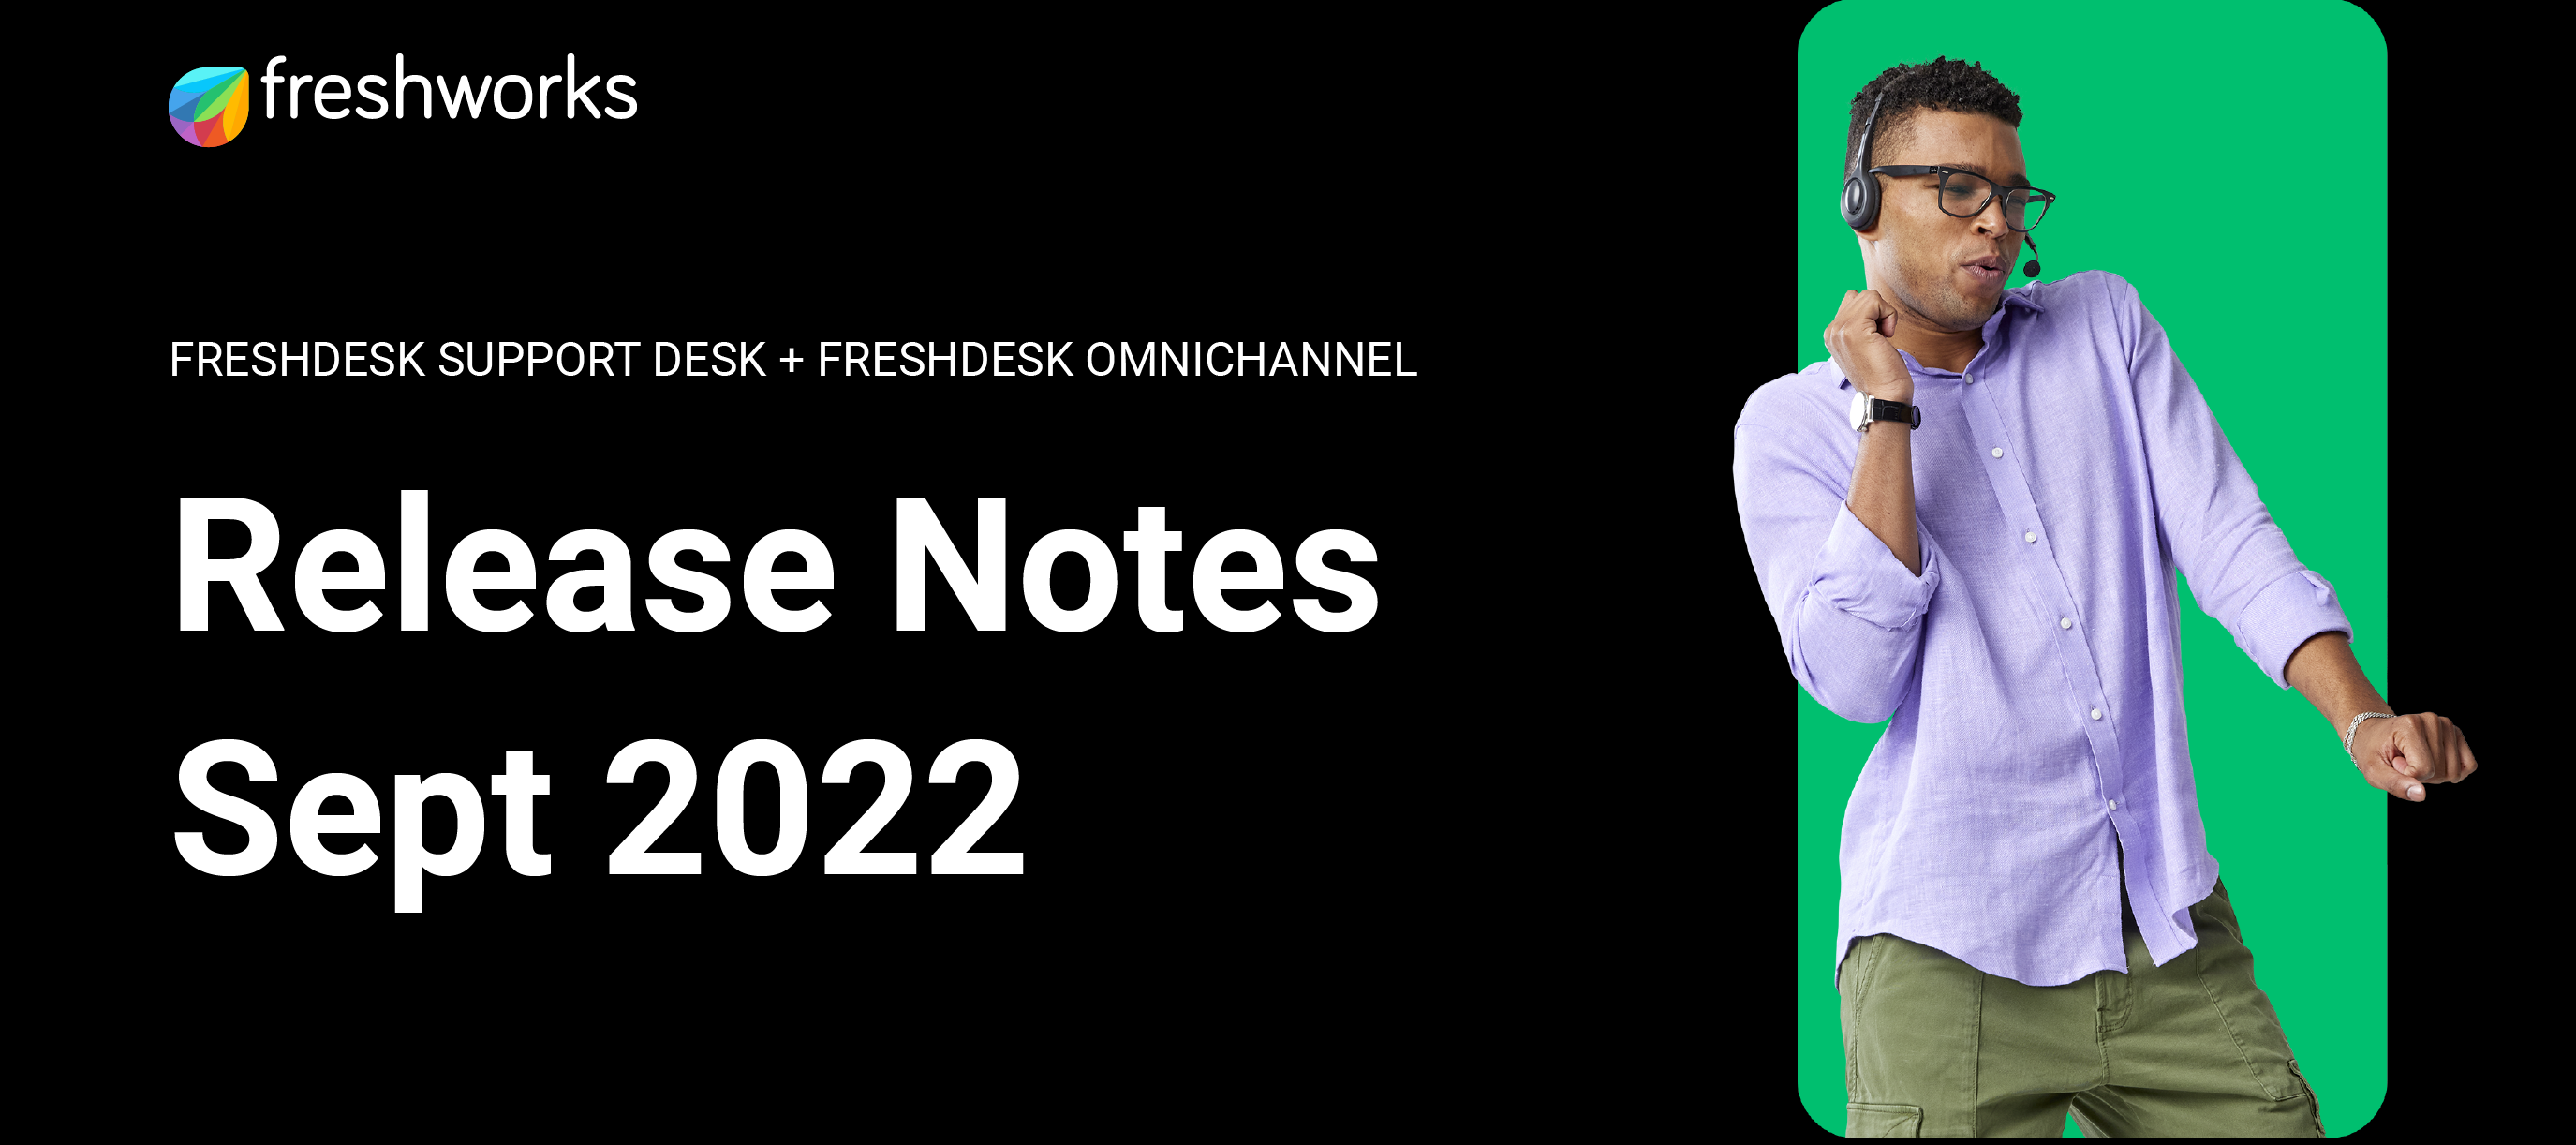 Freshdesk and Freshdesk Omnichannel Release Notes - September 2022